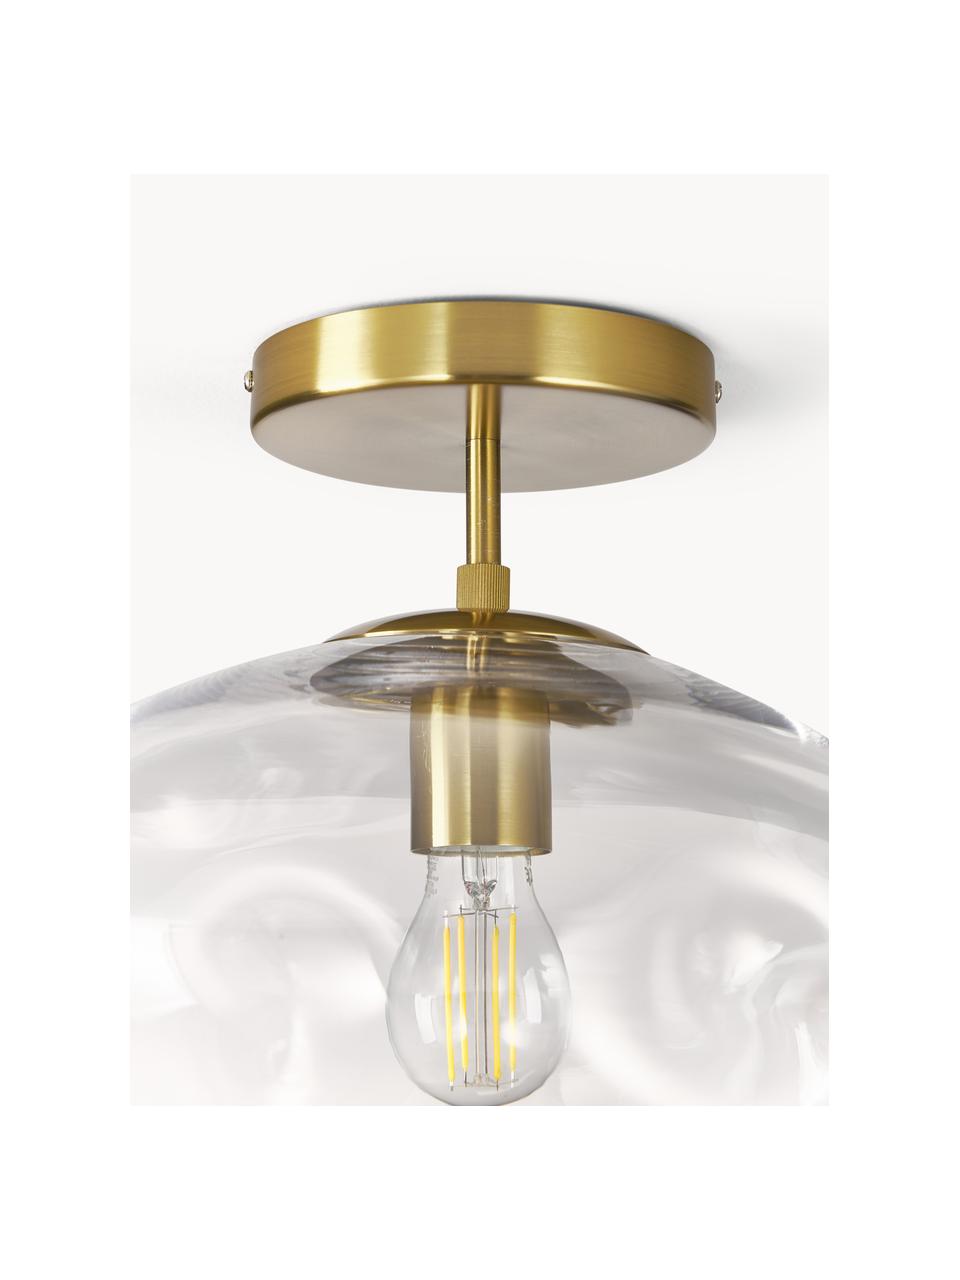 Deckenleuchte Amora aus Glas, Lampenschirm: Glas, Baldachin: Metall, gebürstet, Transparent, Goldfarben, Ø 35 x H 28 cm